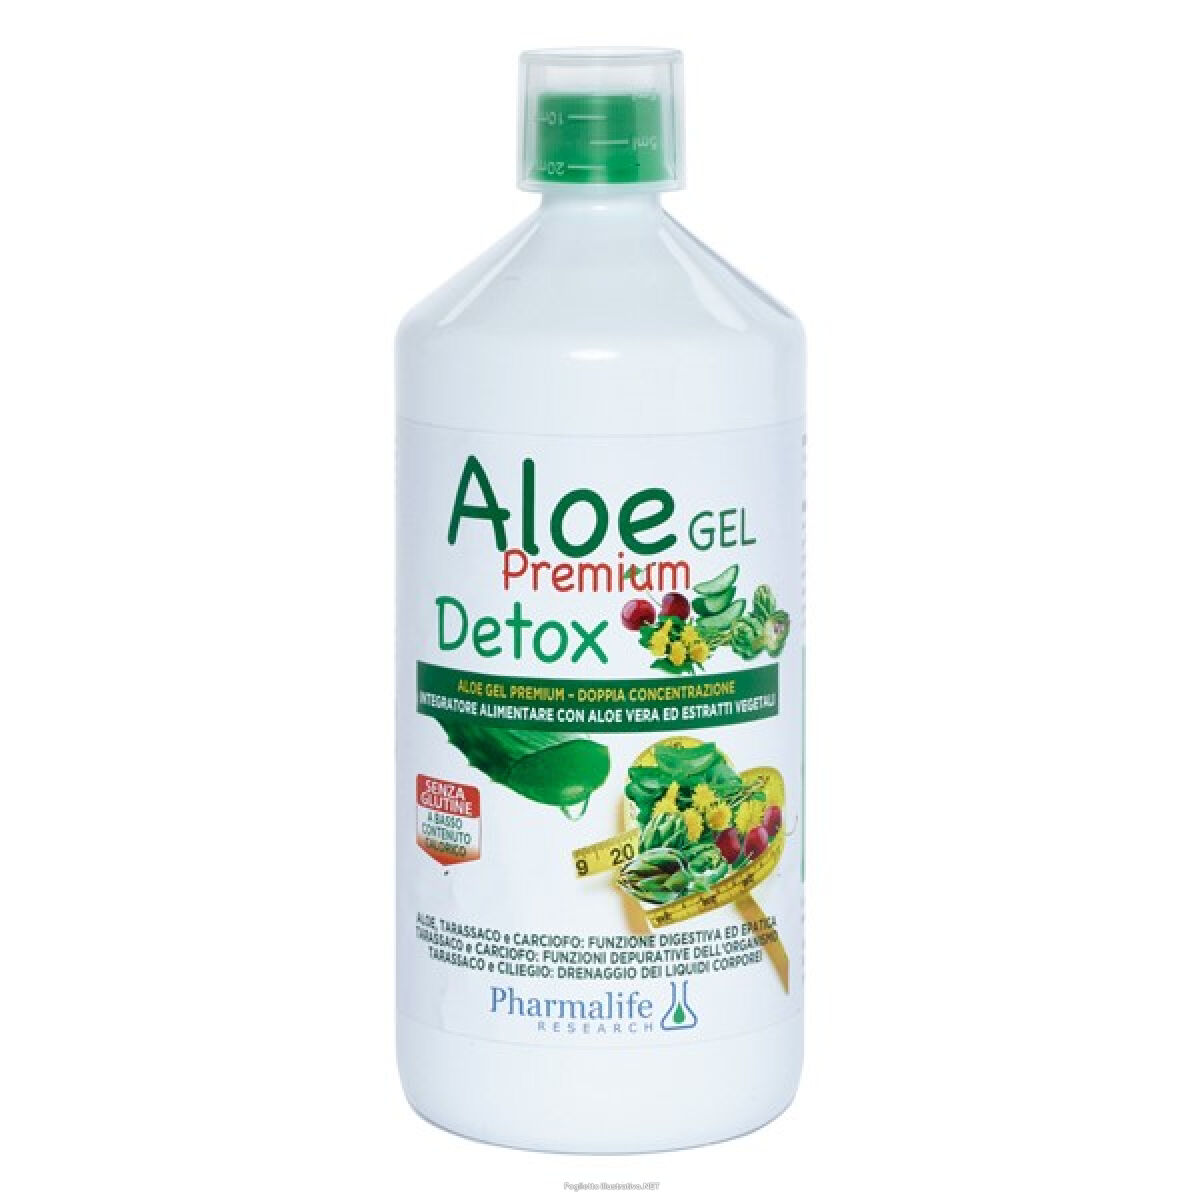 Pharmalife research srl Aloe Gel Premium Detox 1l Alimenti  Pharmalife Research